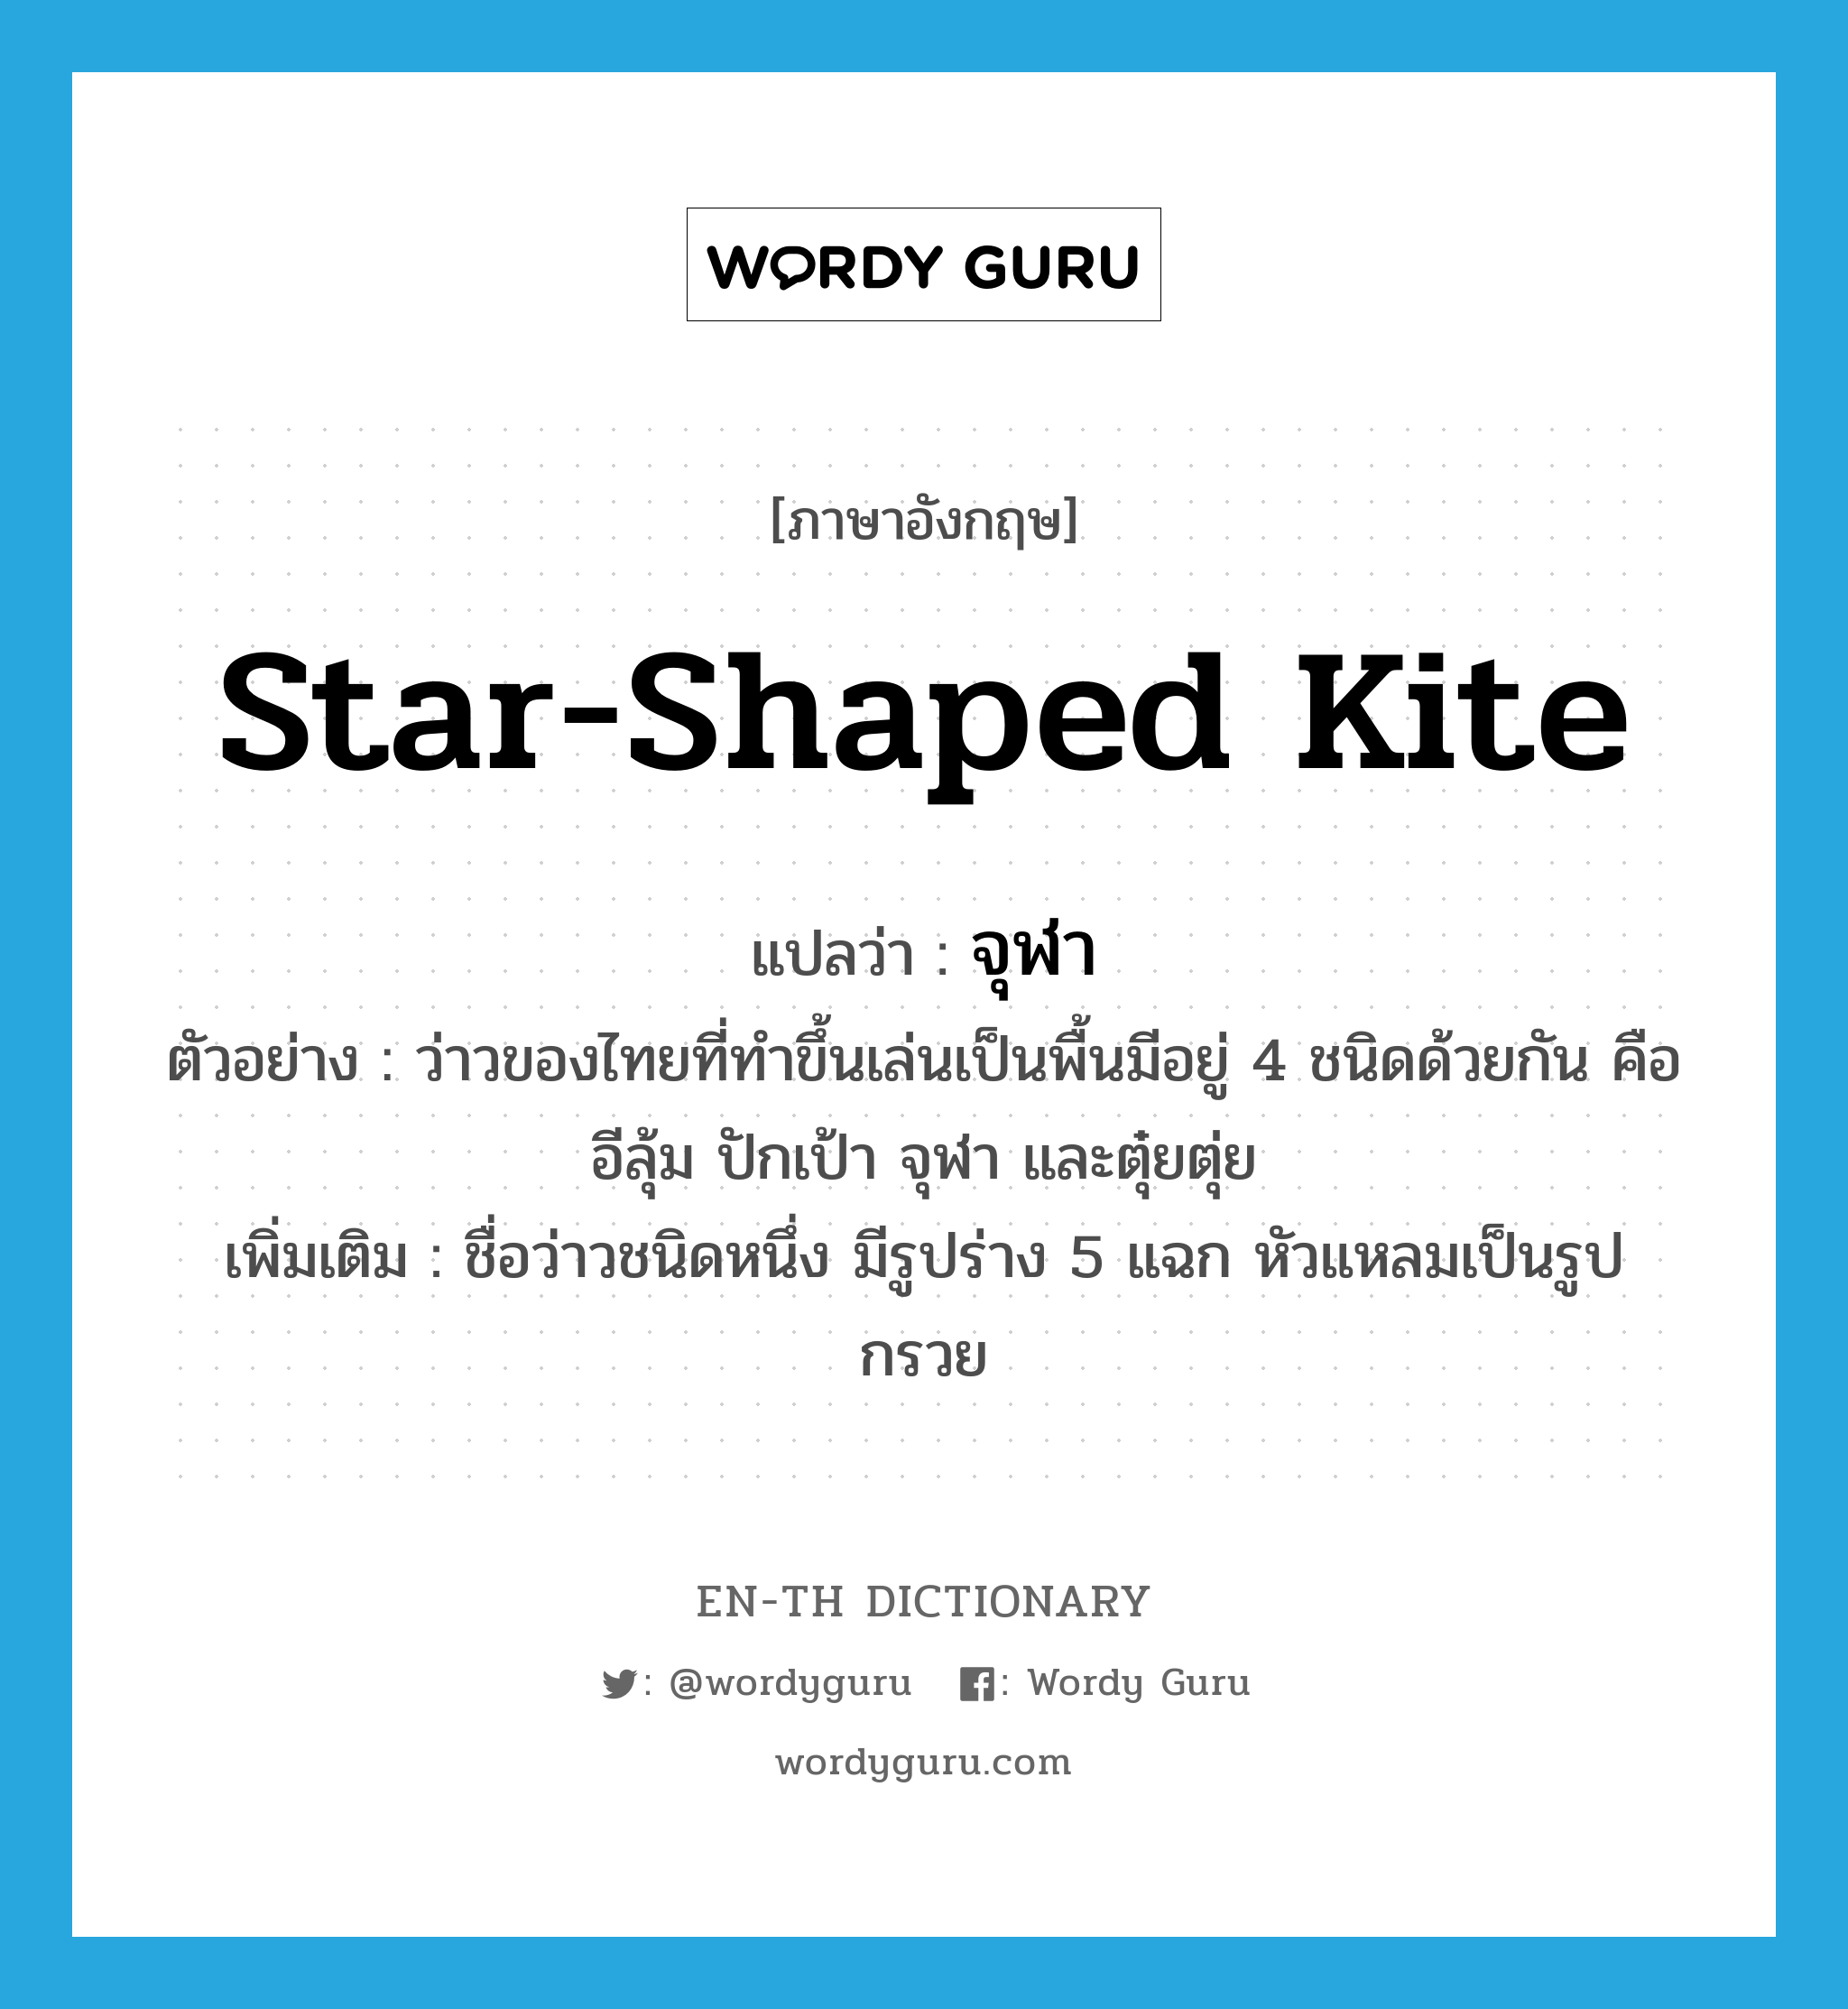 จุฬา ภาษาอังกฤษ?, คำศัพท์ภาษาอังกฤษ จุฬา แปลว่า star-shaped kite ประเภท N ตัวอย่าง ว่าวของไทยที่ทำขึ้นเล่นเป็นพื้นมีอยู่ 4 ชนิดด้วยกัน คือ อีลุ้ม ปักเป้า จุฬา และตุ๋ยตุ่ย เพิ่มเติม ชื่อว่าวชนิดหนึ่ง มีรูปร่าง 5 แฉก หัวแหลมเป็นรูปกรวย หมวด N